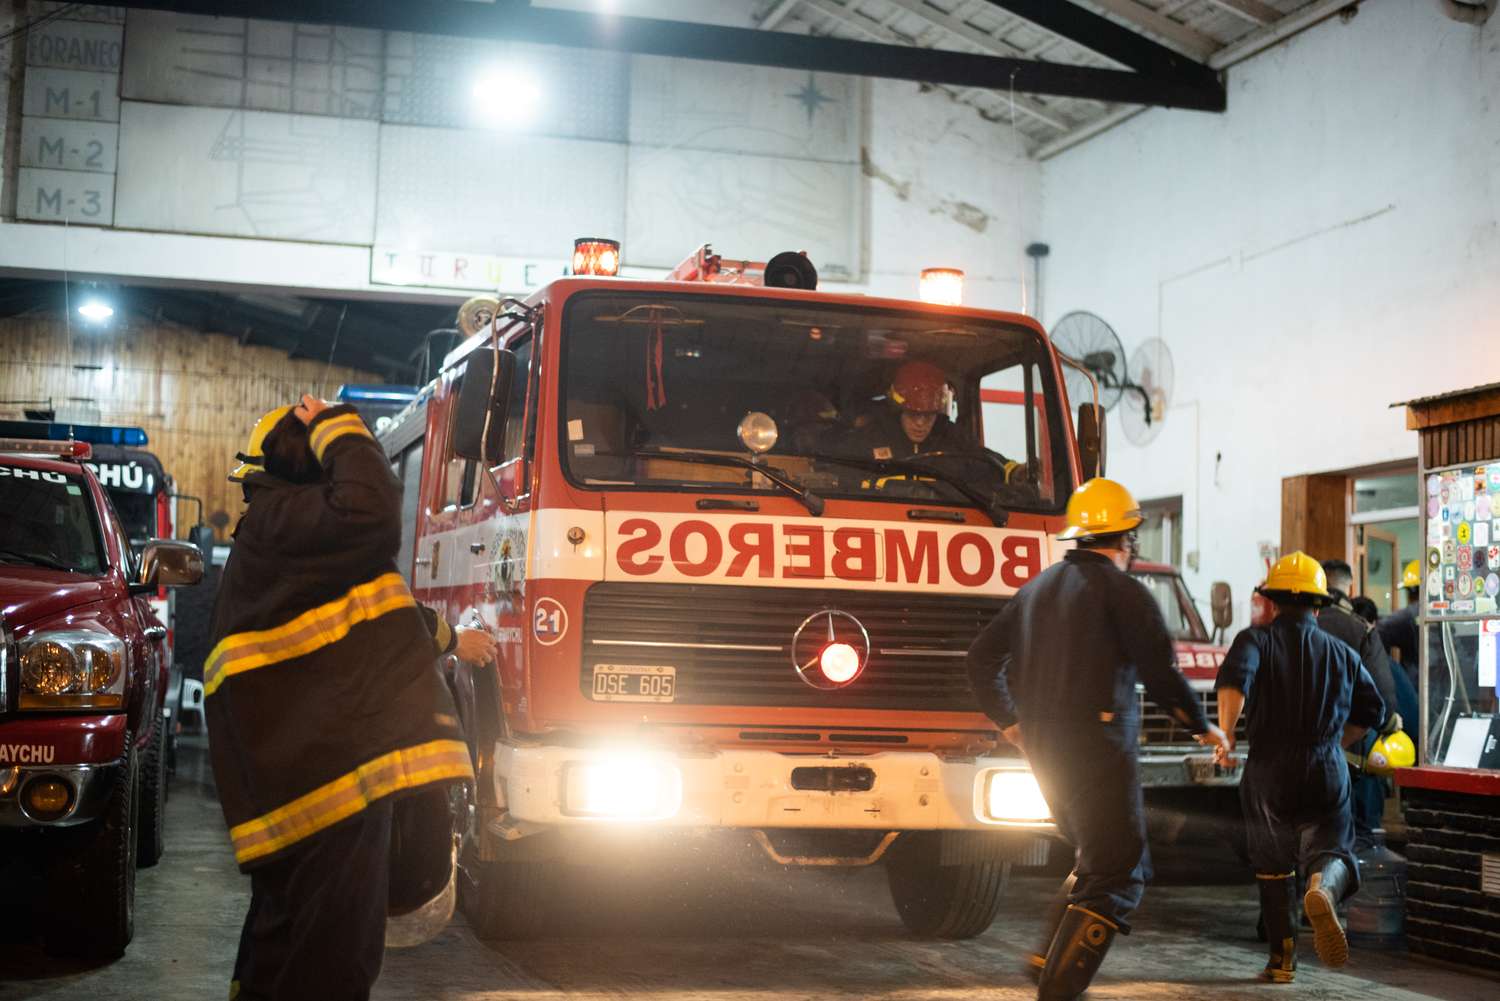 Los bomberos advierten sobre los peligros de los falsos llamados de emergencia